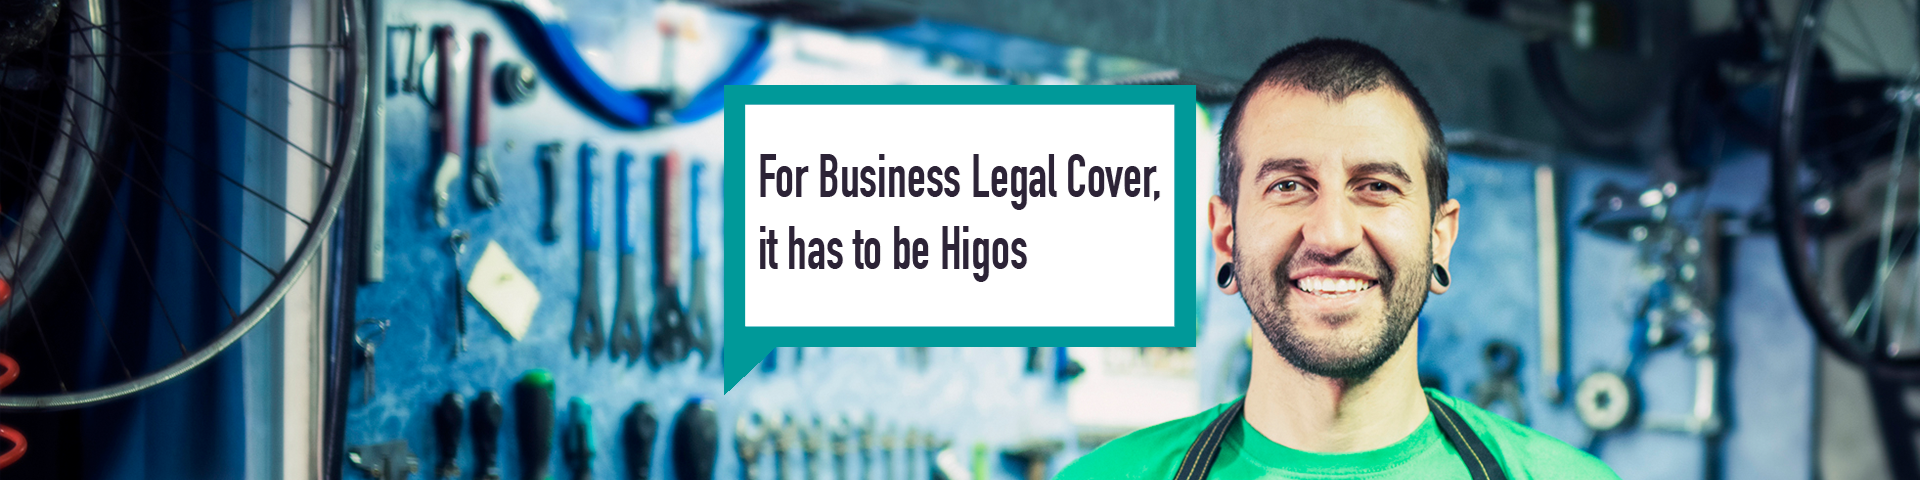 Higos business insurance legal expenses bike repair shop